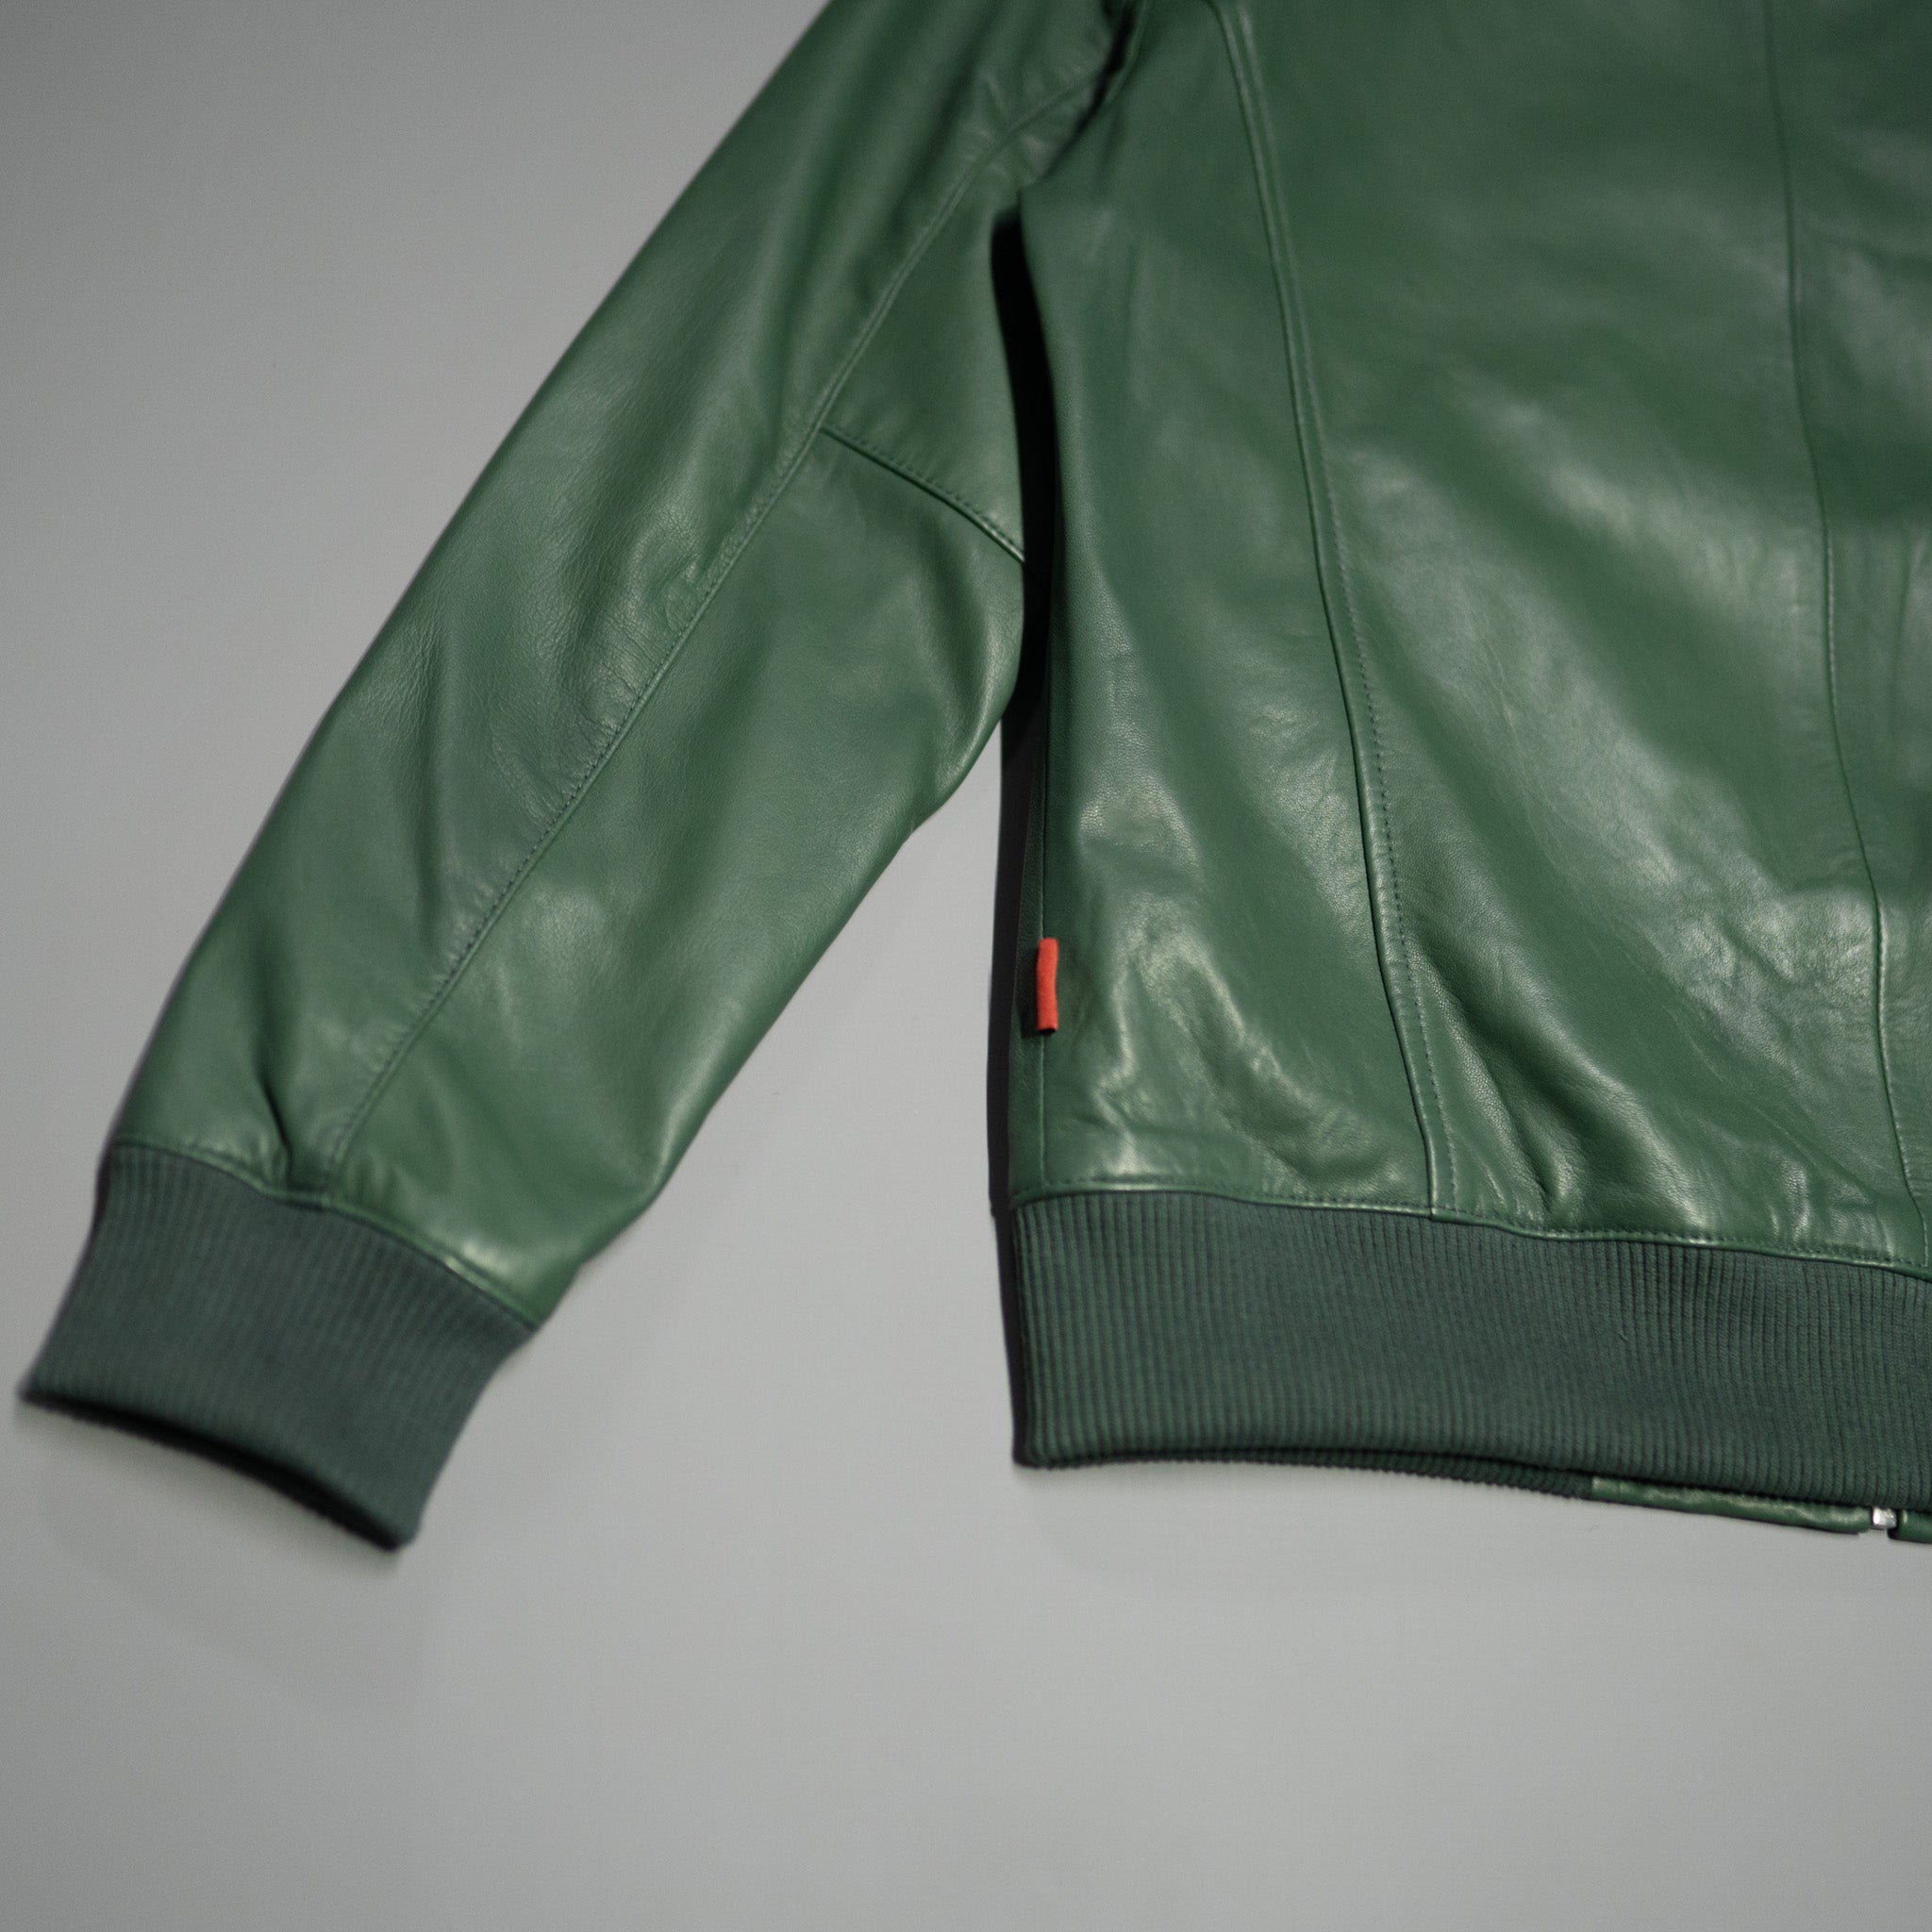 Olive green leather bomber jacket CAMOKAZI